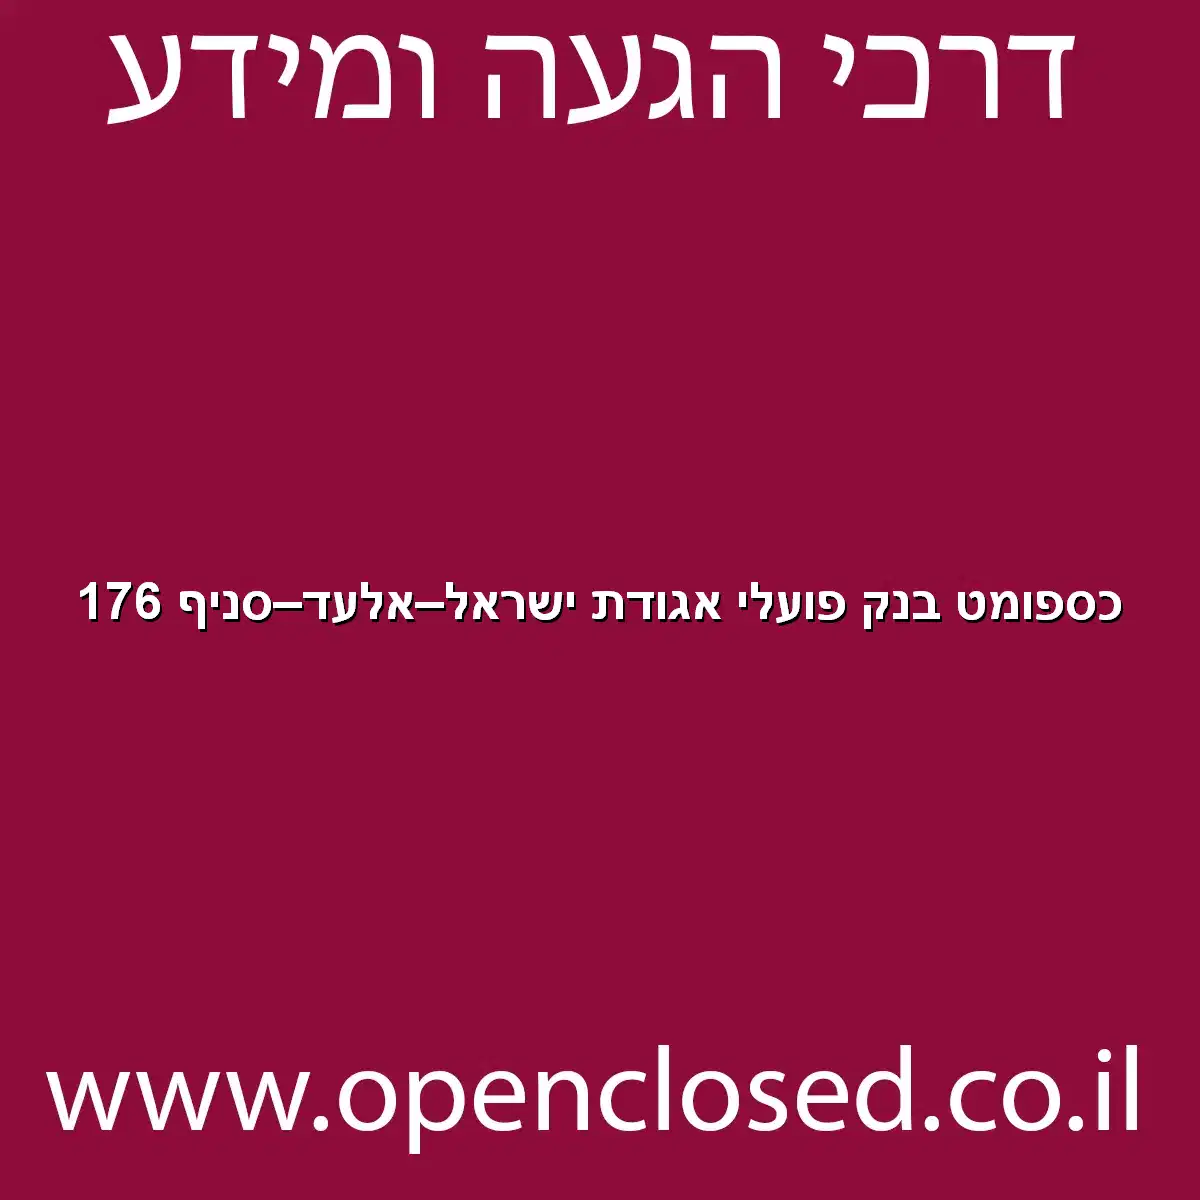 כספומט בנק פועלי אגודת ישראל אלעד סניף 176